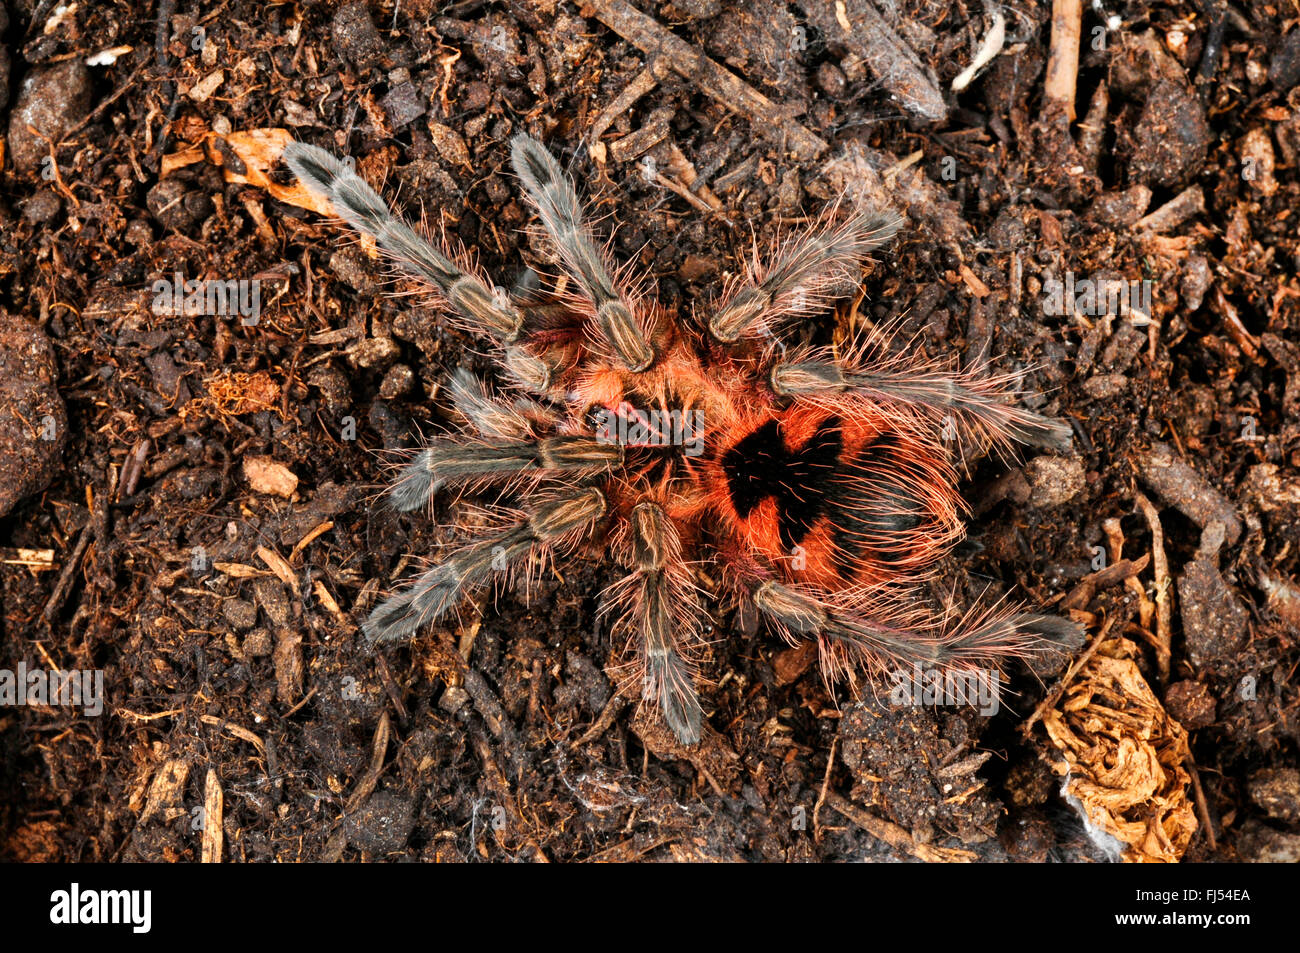 Birdeater, tarantula (Pamphbeteus spec.), spiderling of a yet undescribed species, Ecuador, Machala Stock Photo